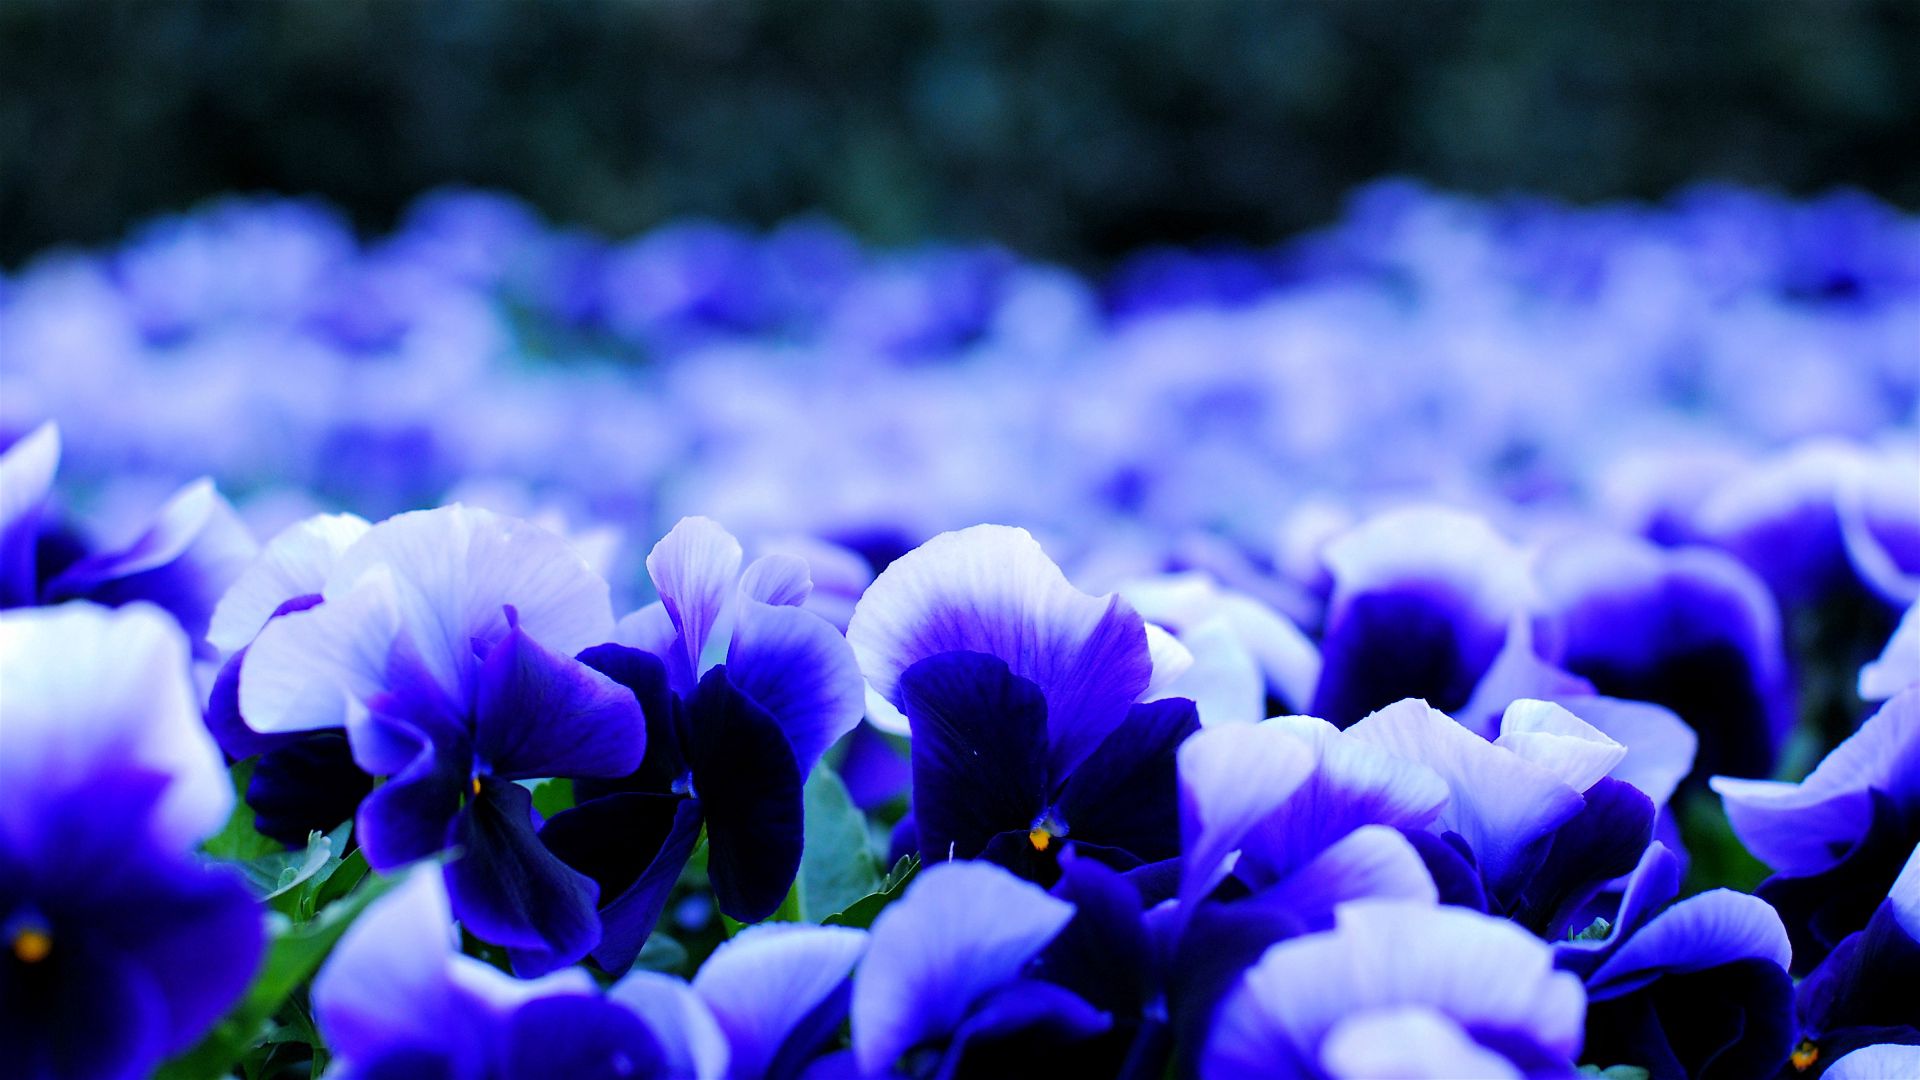 Pansies viol, viola, flowers, petals Lock Screen